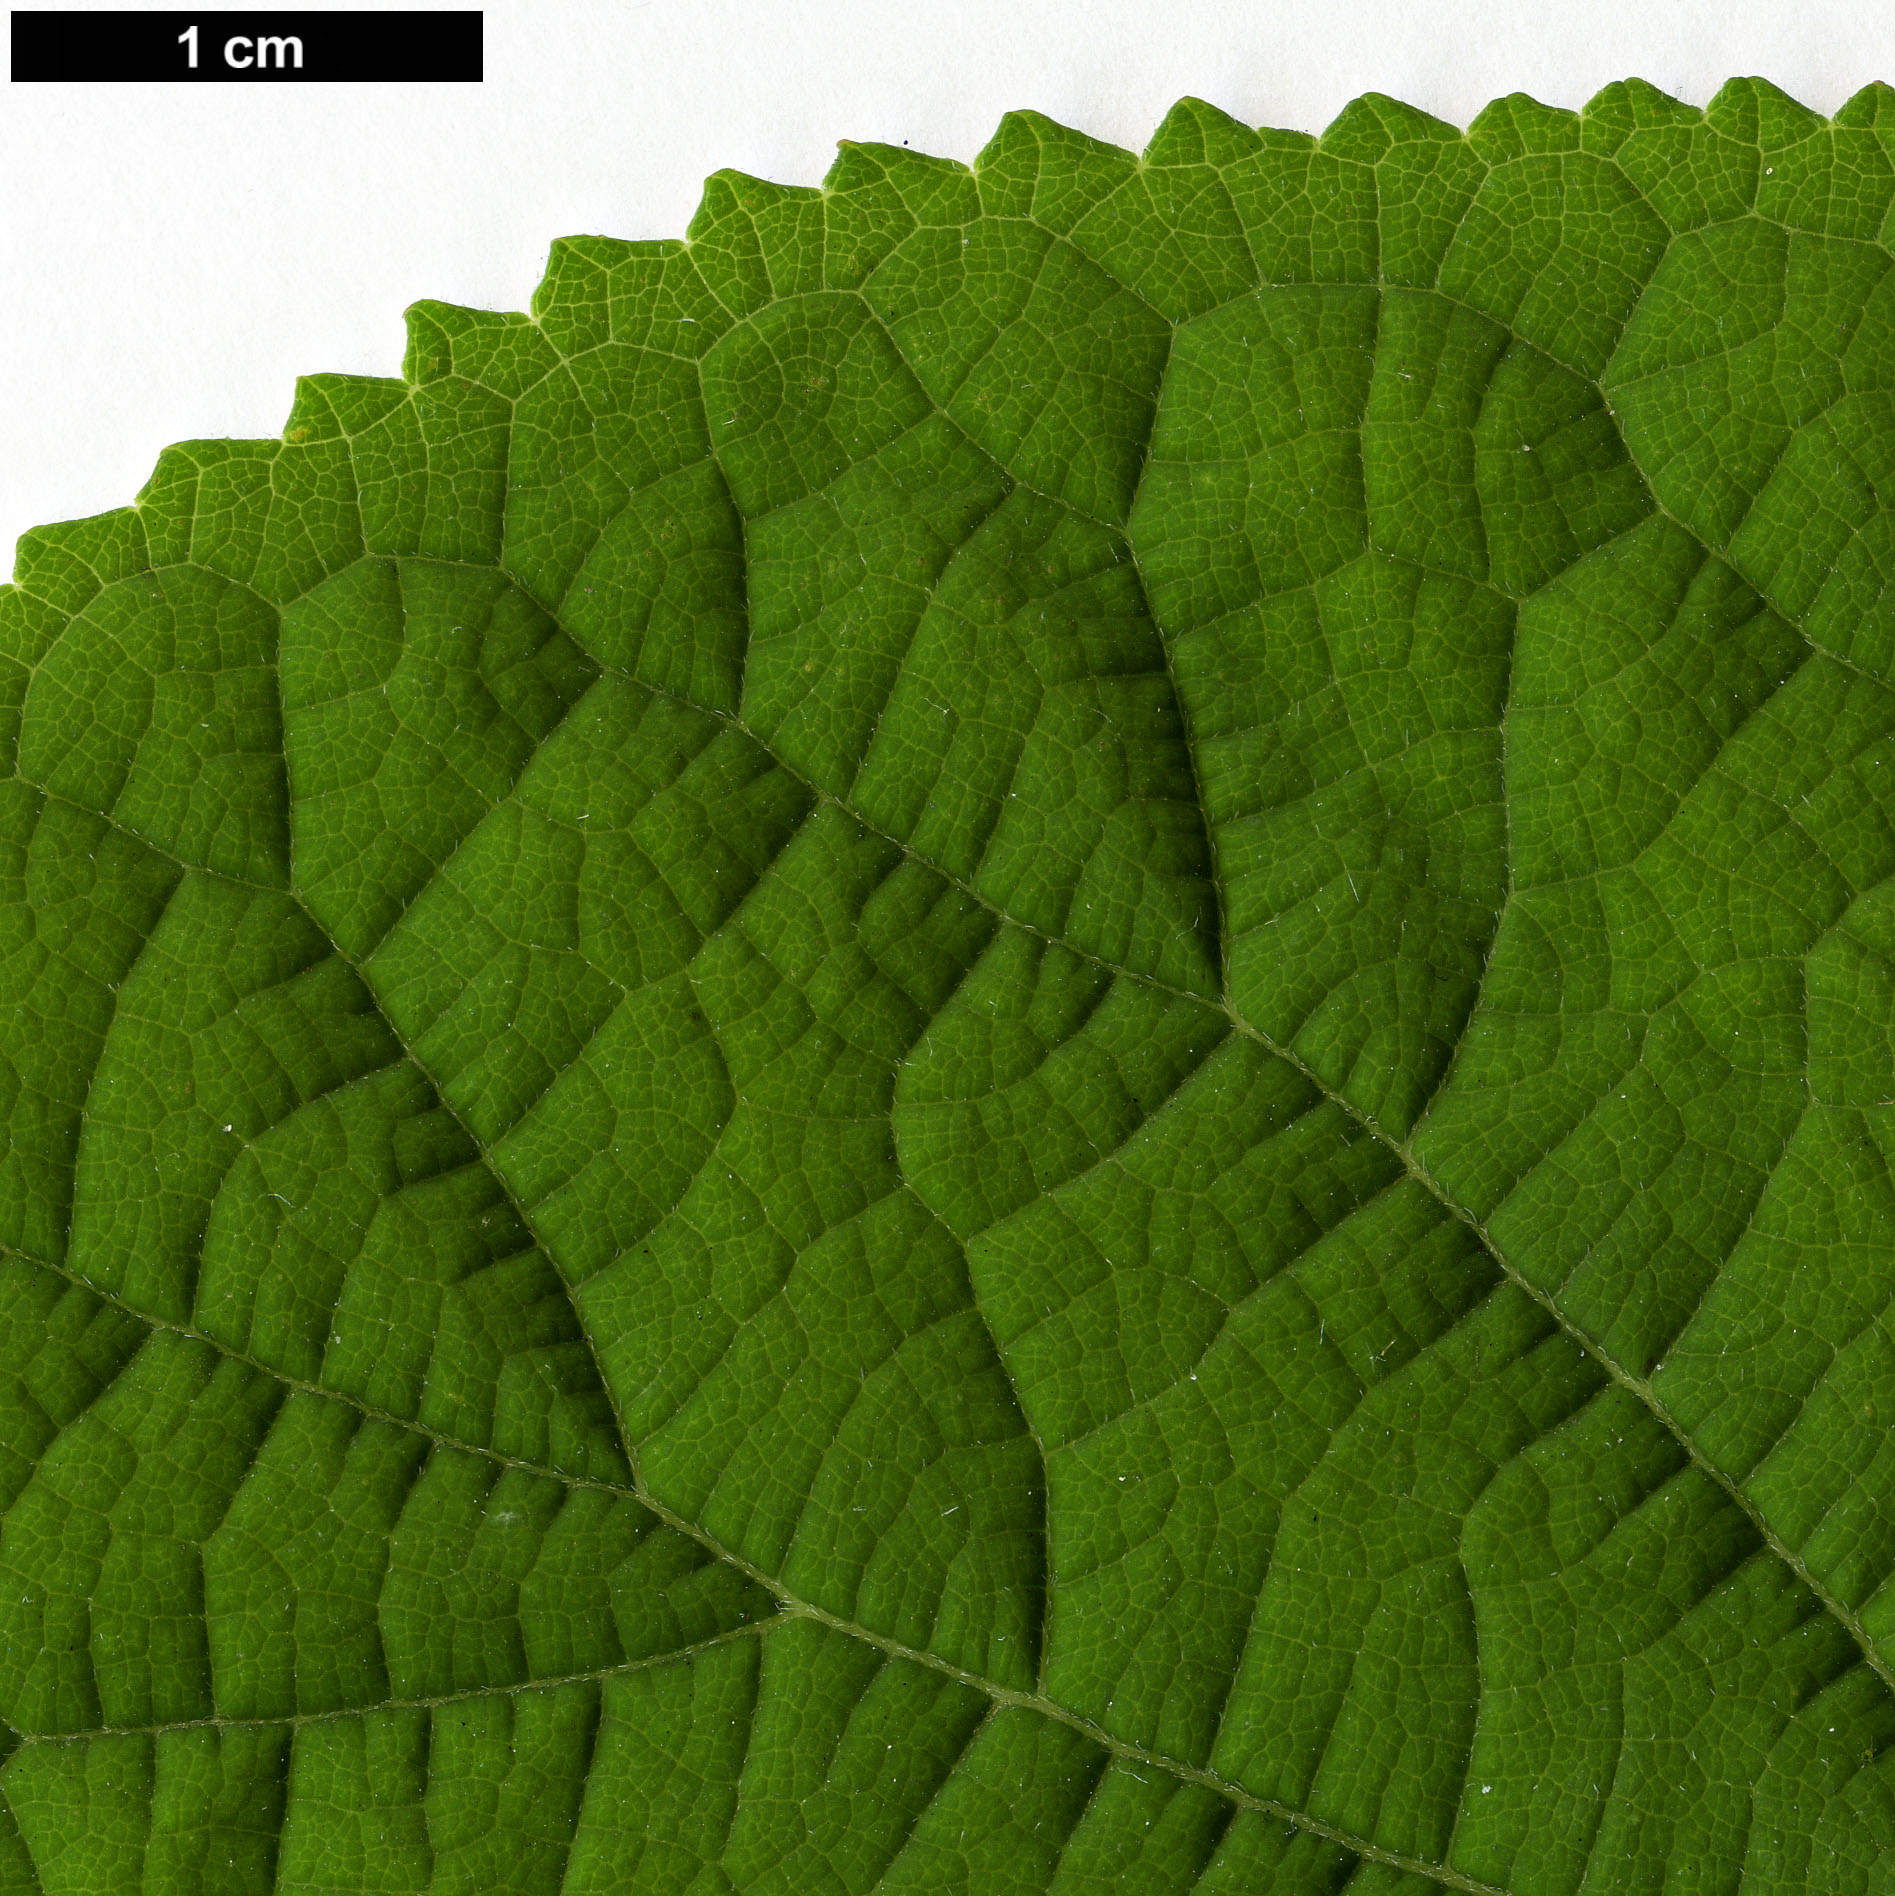 High resolution image: Family: Hydrangeaceae - Genus: Hydrangea - Taxon: arborescens - SpeciesSub: subsp. radiata